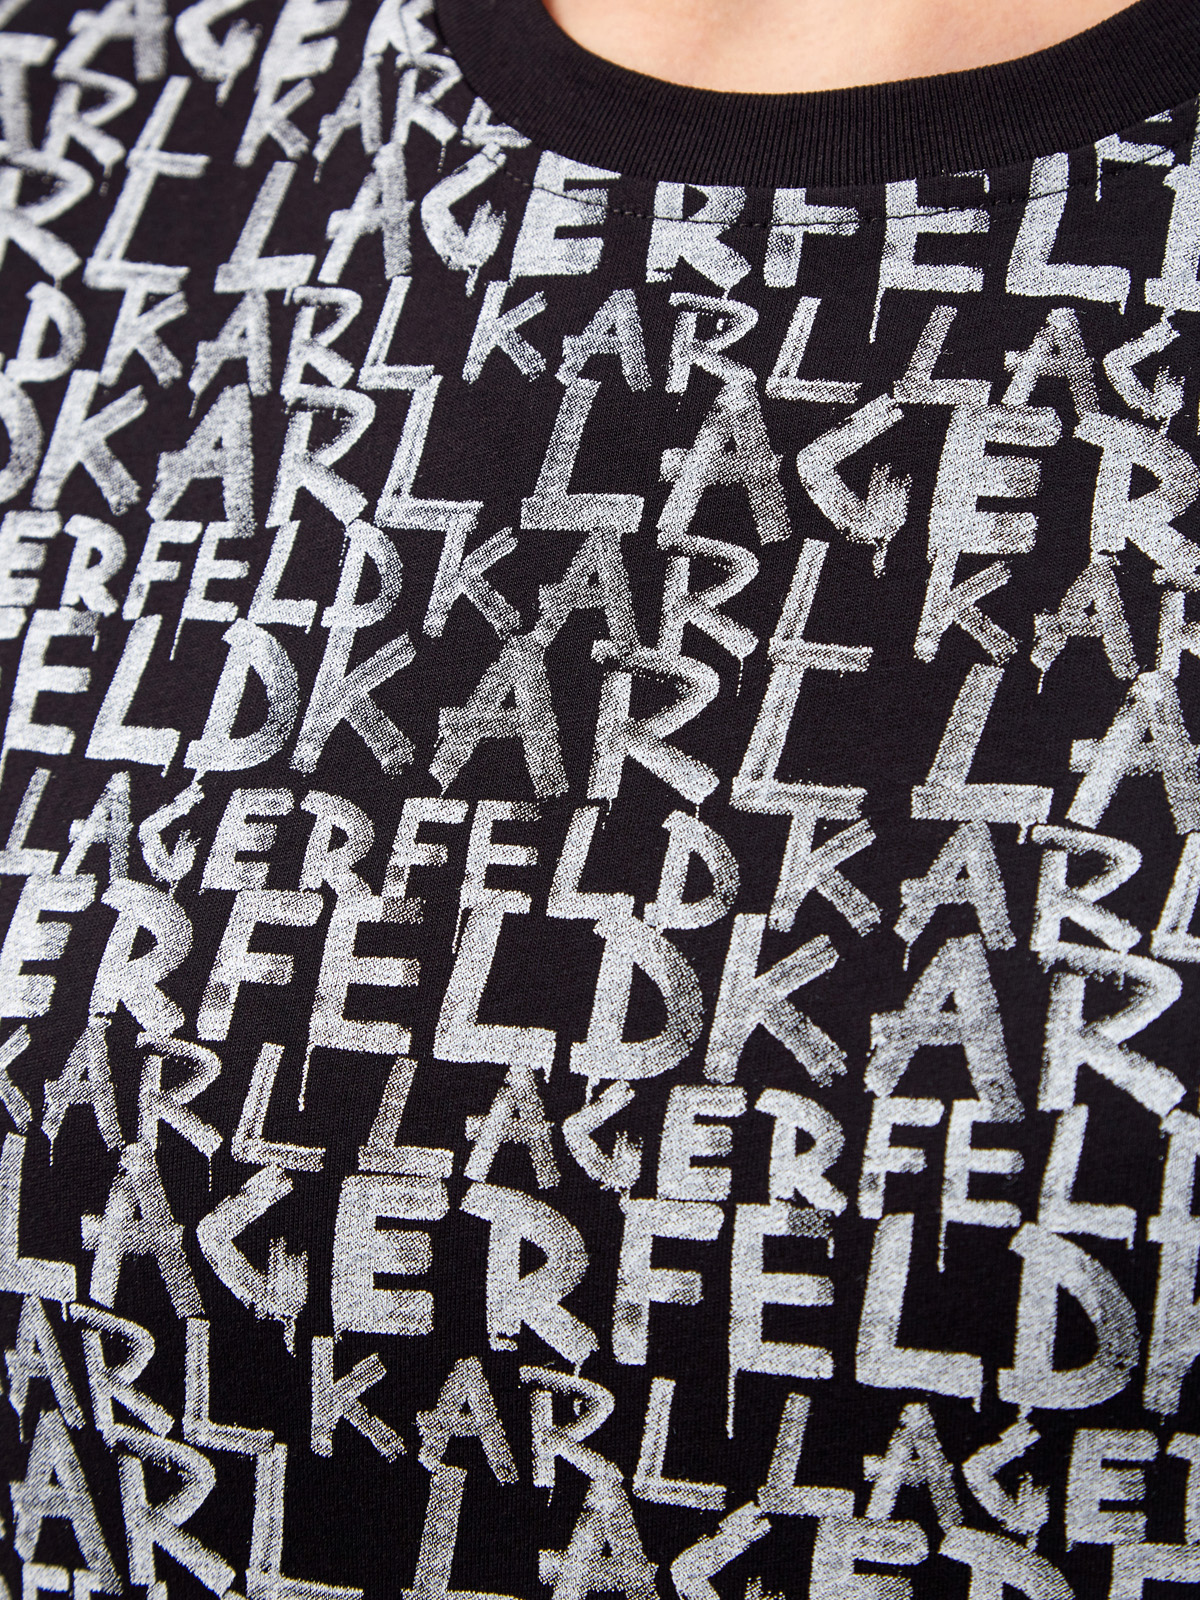 Хлопковая футболка с контрастным принтом в стиле леттеринг KARL LAGERFELD, цвет черный, размер XS;S;M;L - фото 5